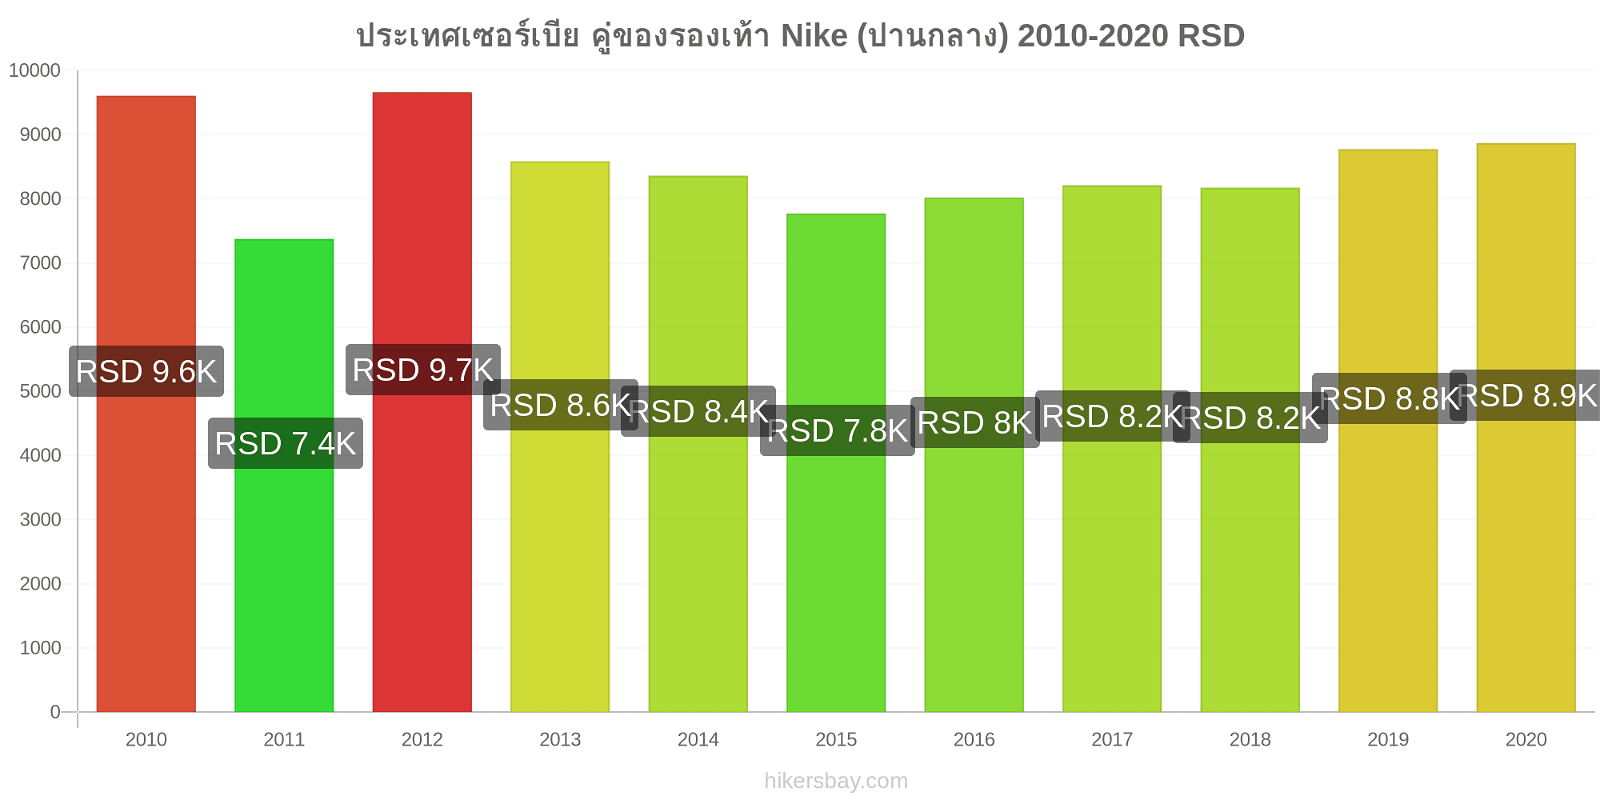 ประเทศเซอร์เบีย การเปลี่ยนแปลงราคา คู่ของรองเท้า Nike (ปานกลาง) hikersbay.com